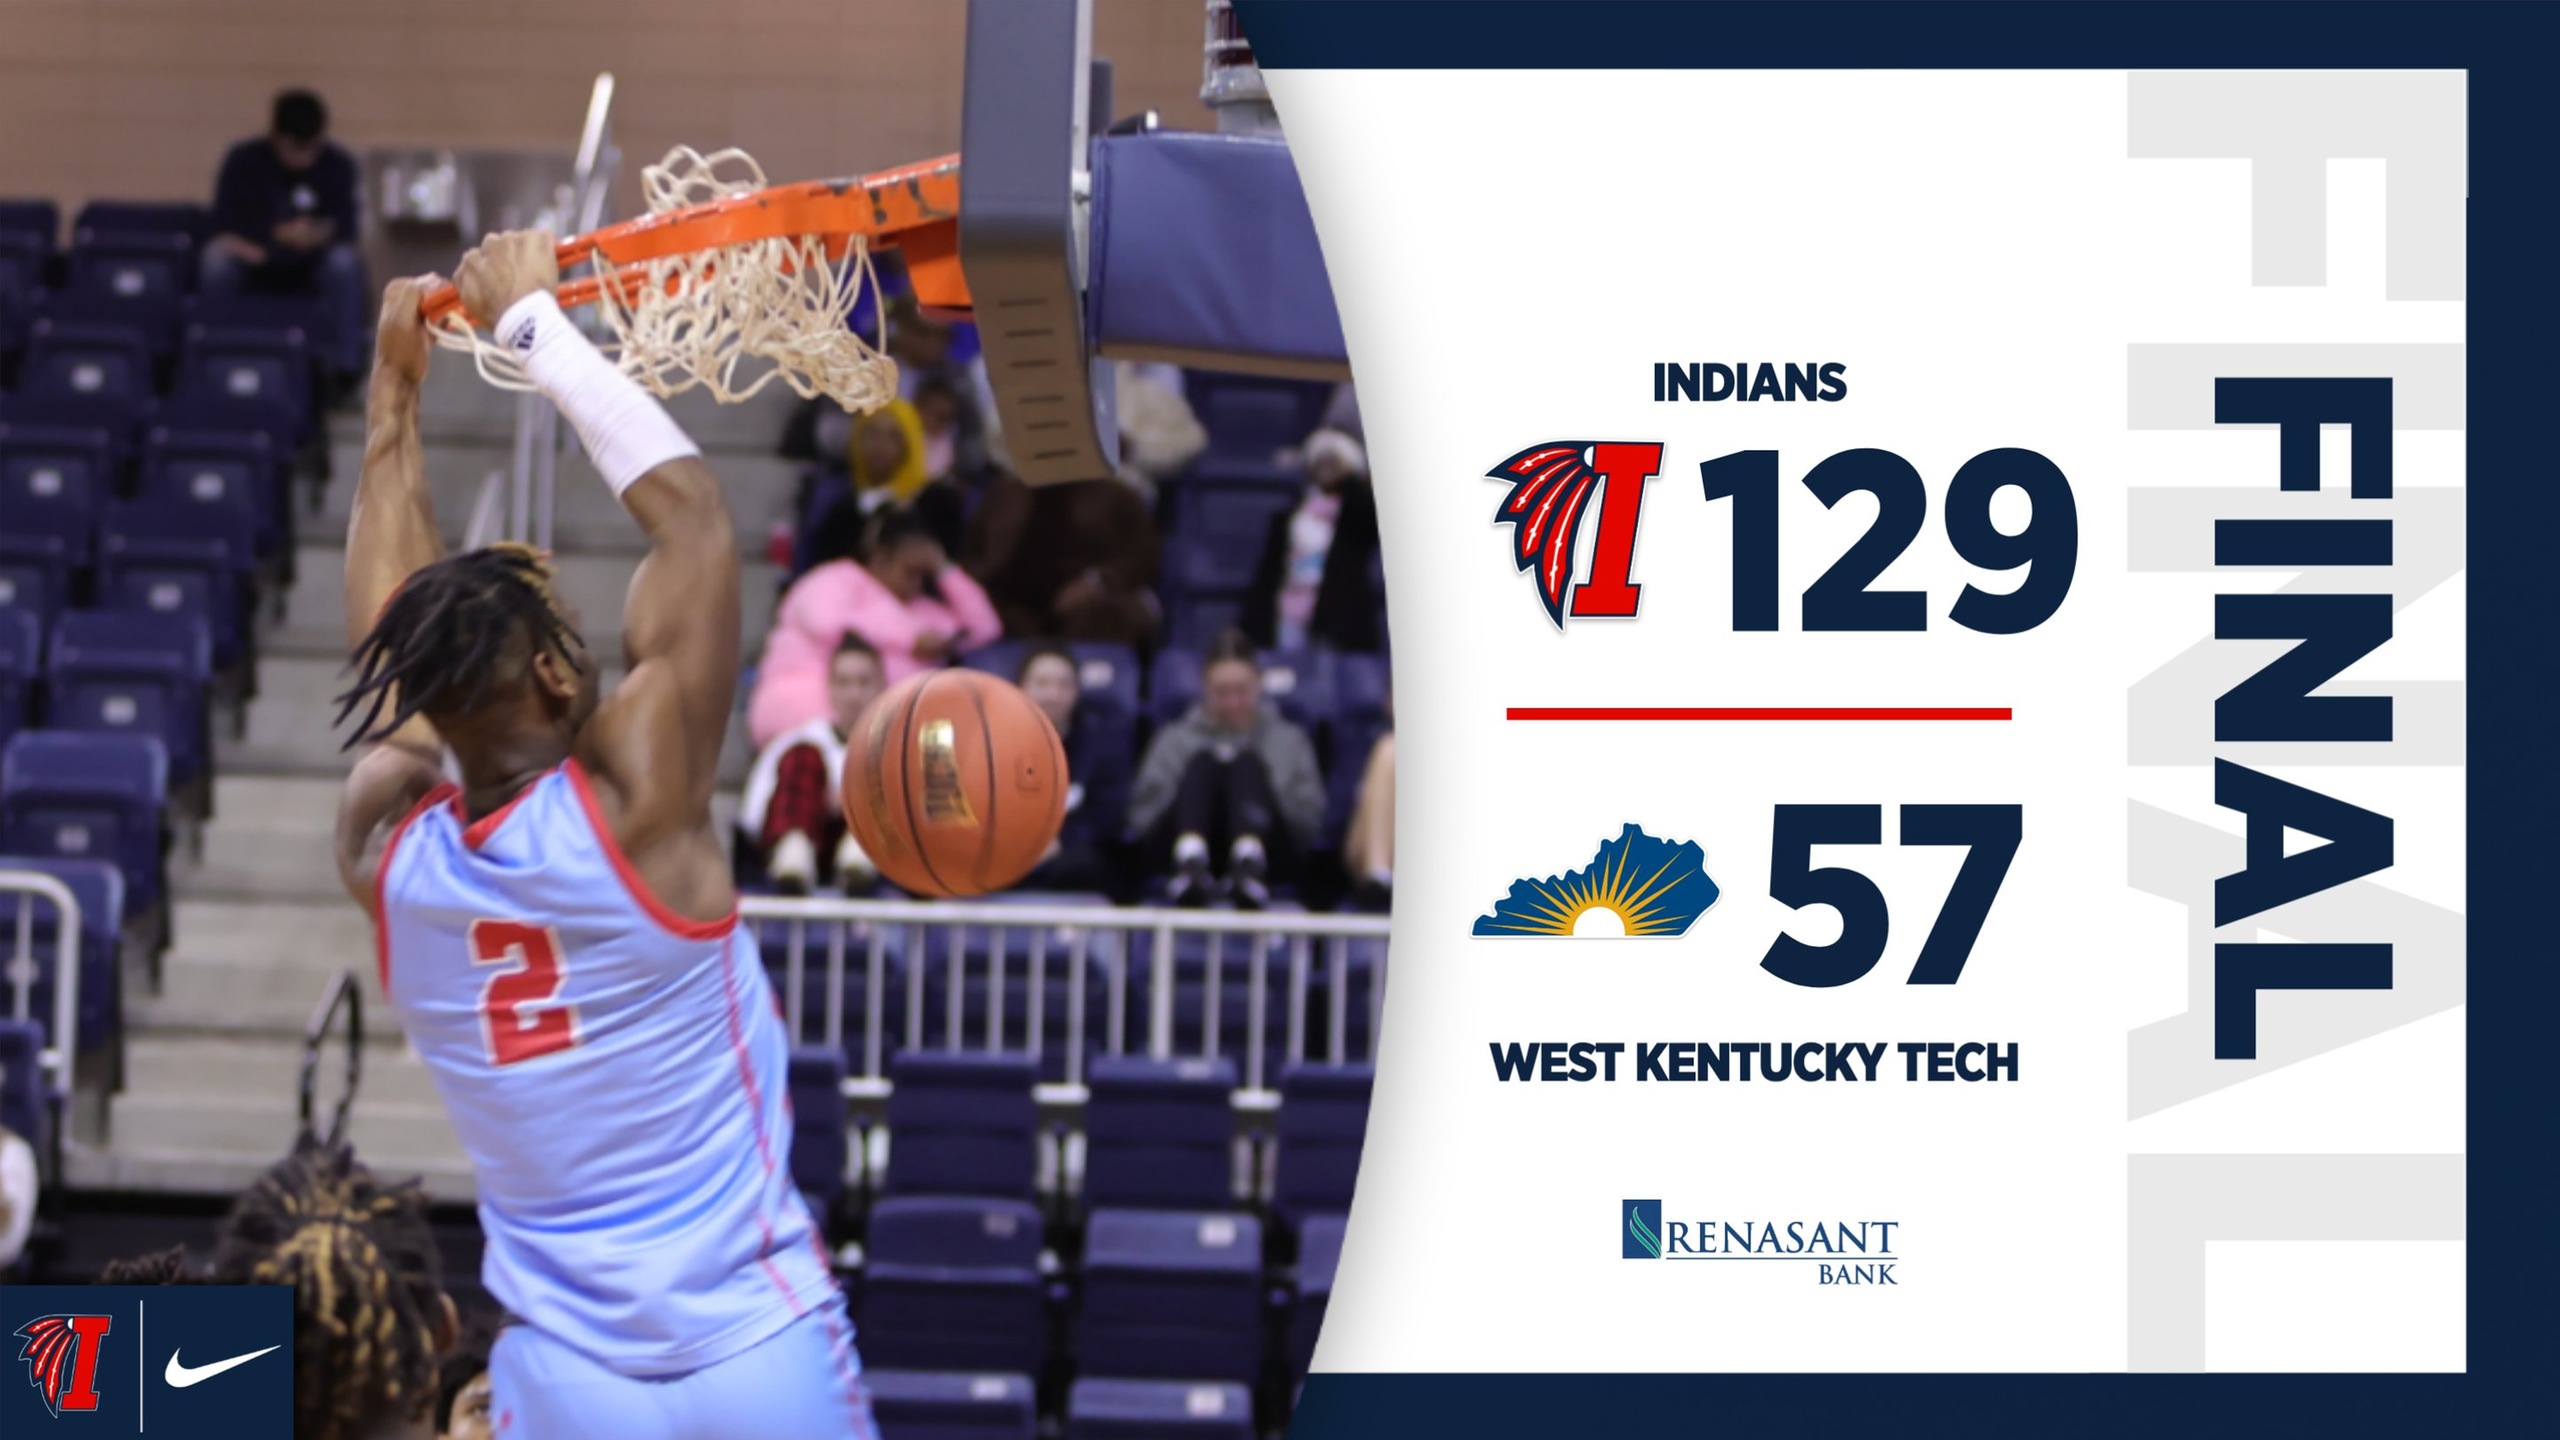 Indians dominate West Kentucky Tech, 129-57